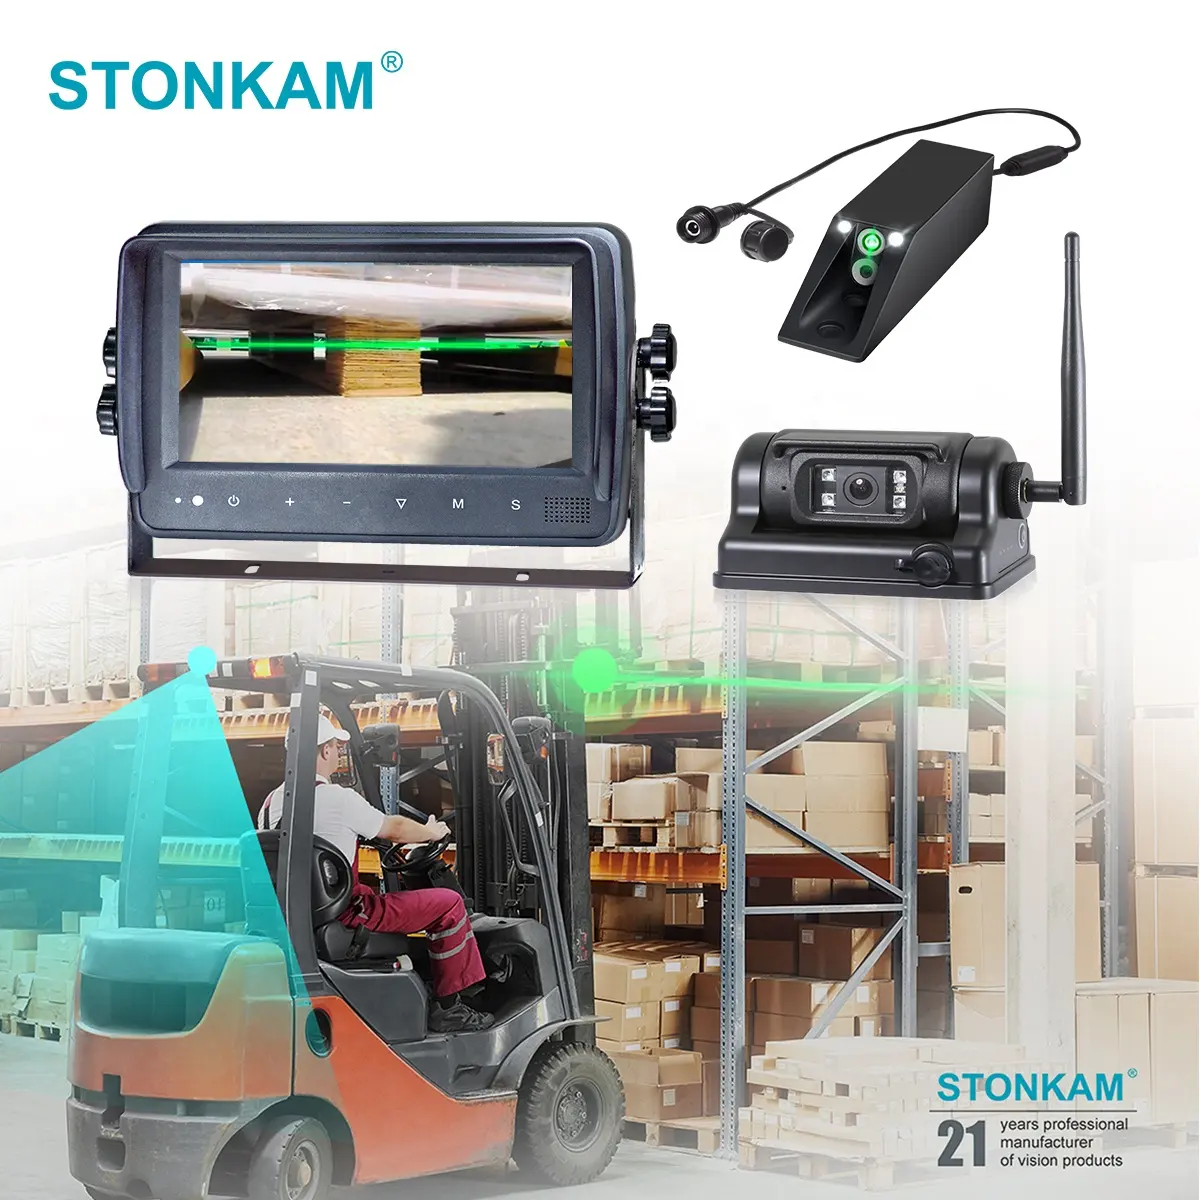 STONKAM kamera Forklift nirkabel HD, Laser transmisi jarak jauh tahan air tahan guncangan bertenaga baterai magnetik